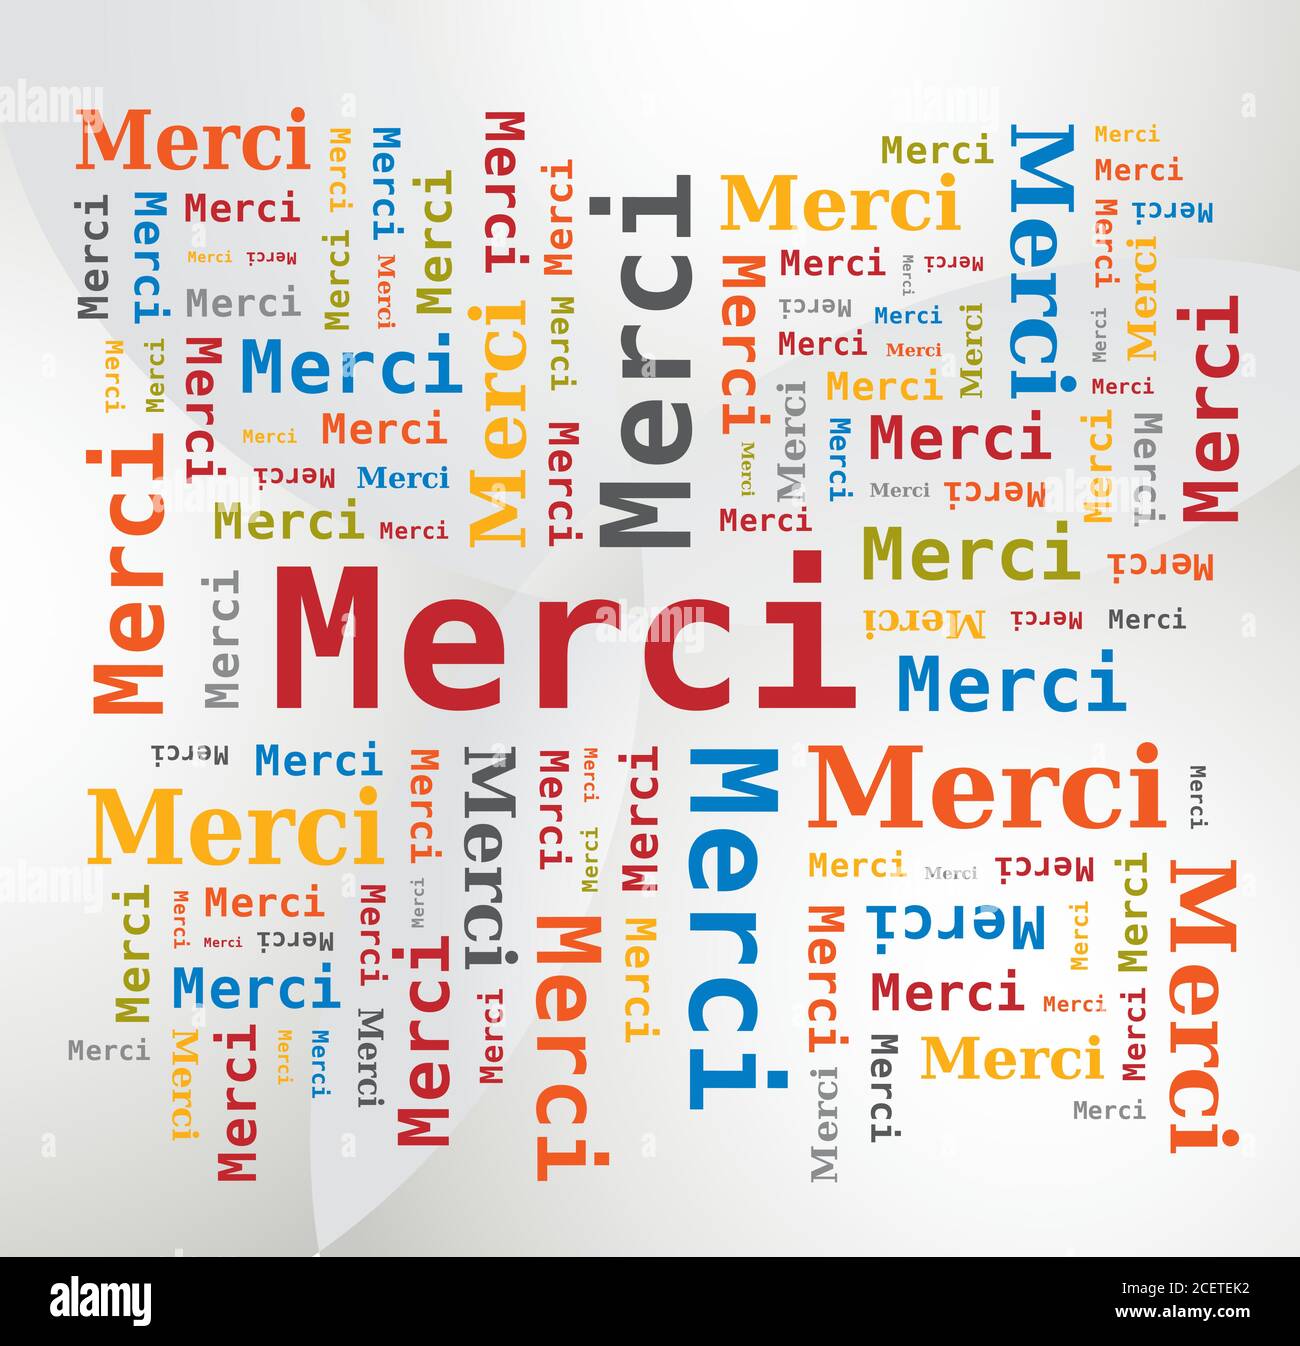 Word Cloud - Danke auf Französisch - Merci - Mehrfarbige Buchstaben und verschiedene Orientierungen Stock Vektor